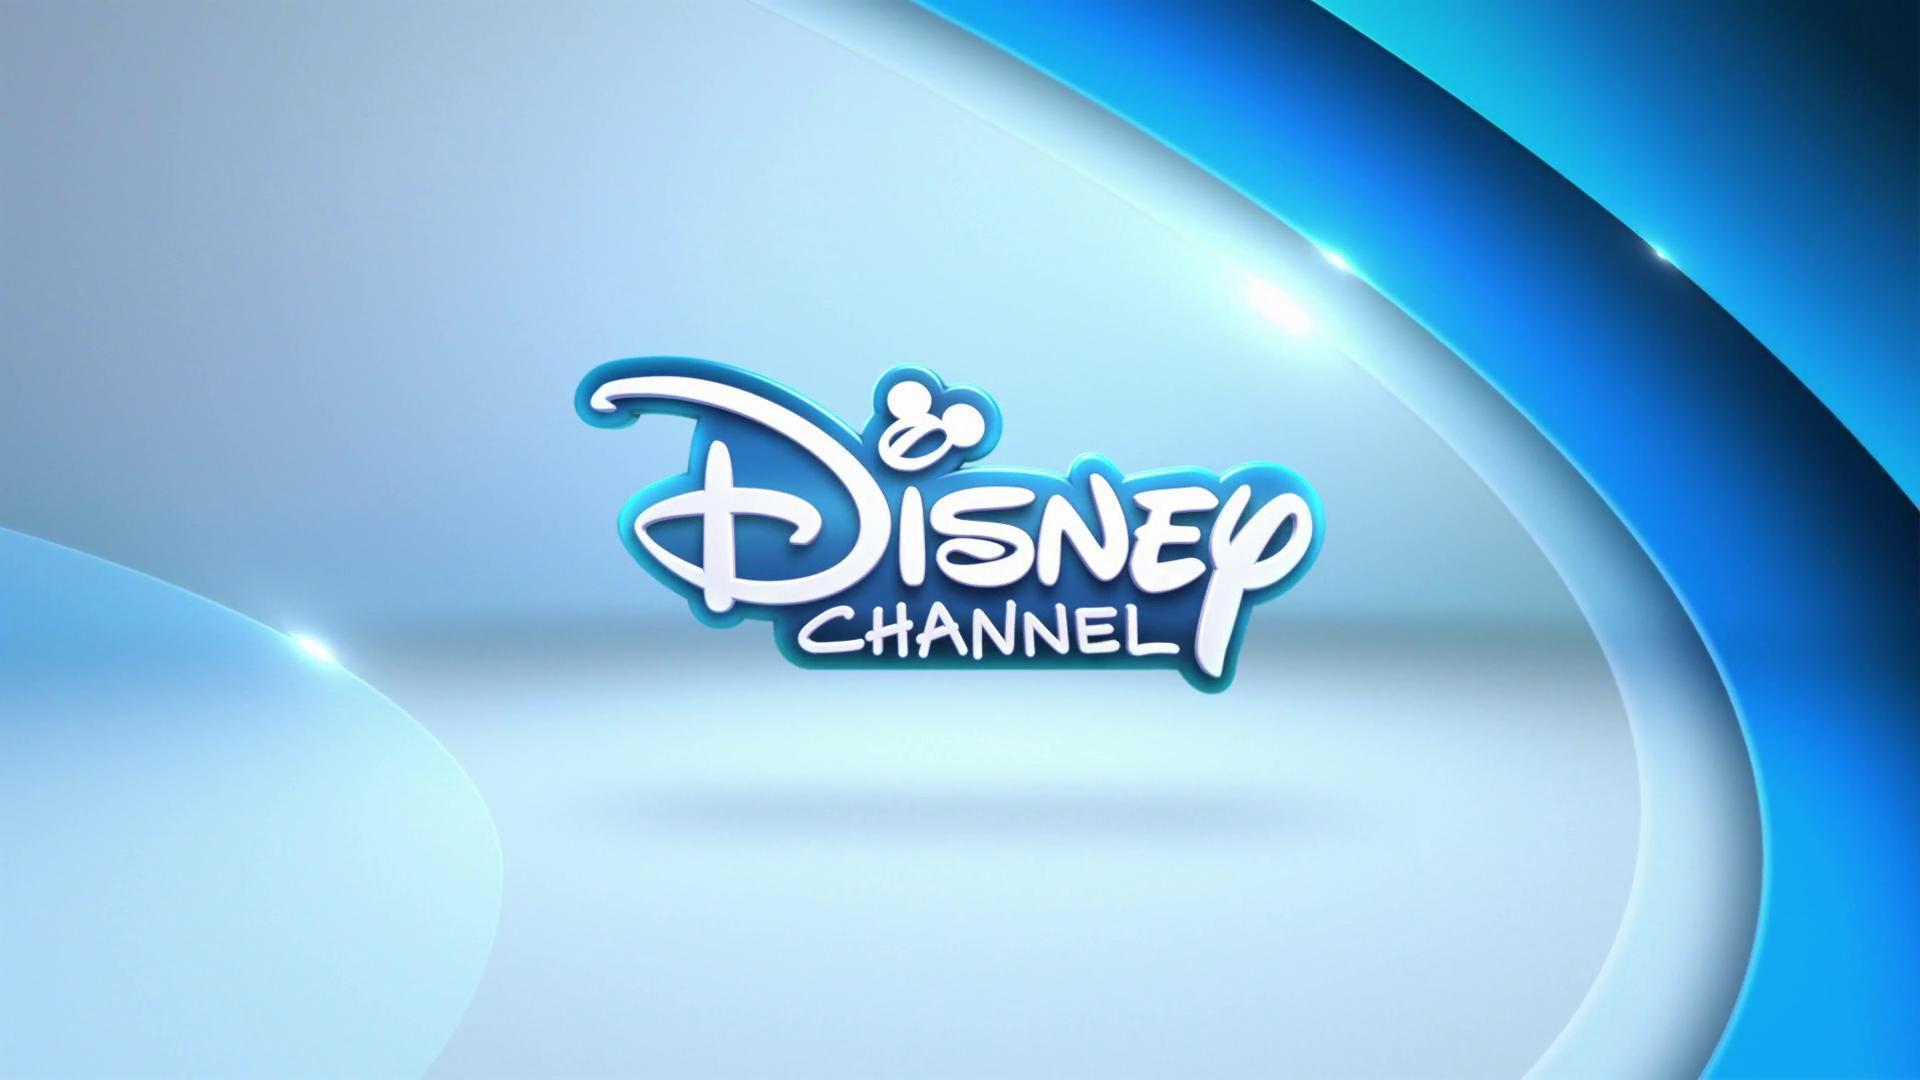 Disney Channel Wallpapers - Disney Channel - HD Wallpaper 